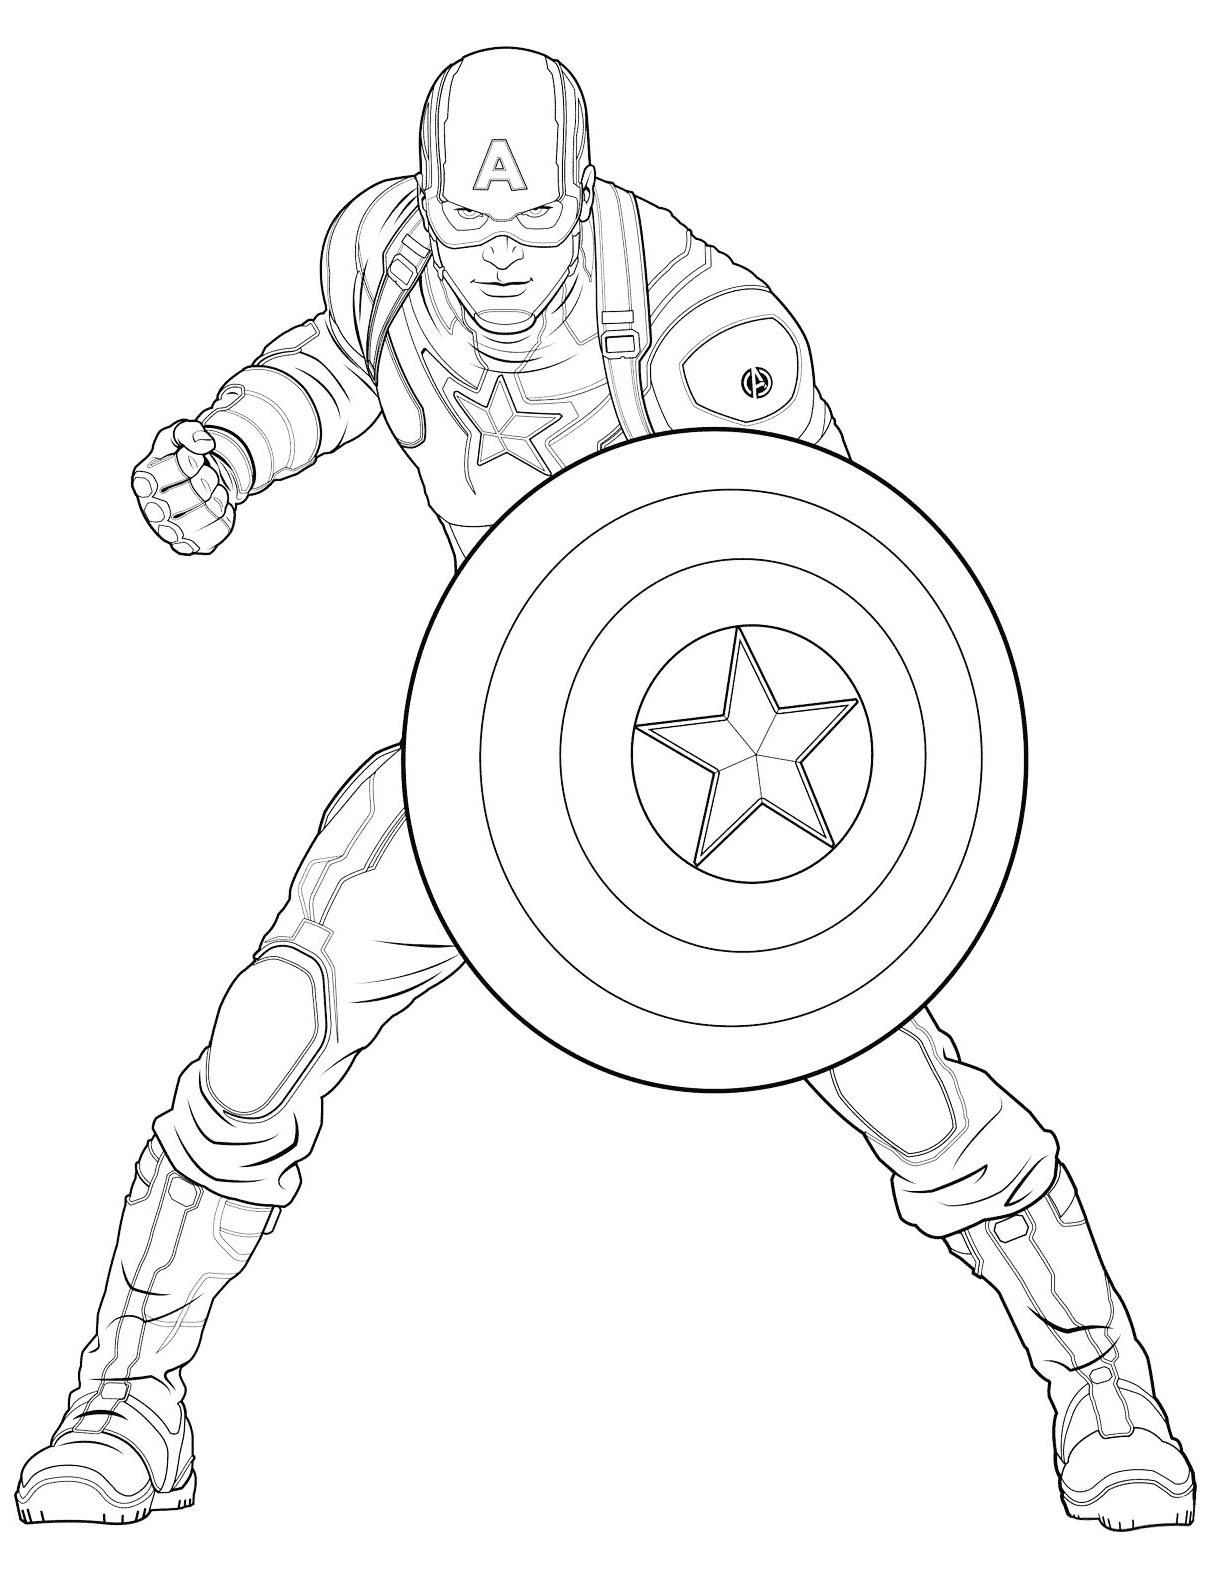 Imagen del Capitán América para descargar e imprimir para los niños